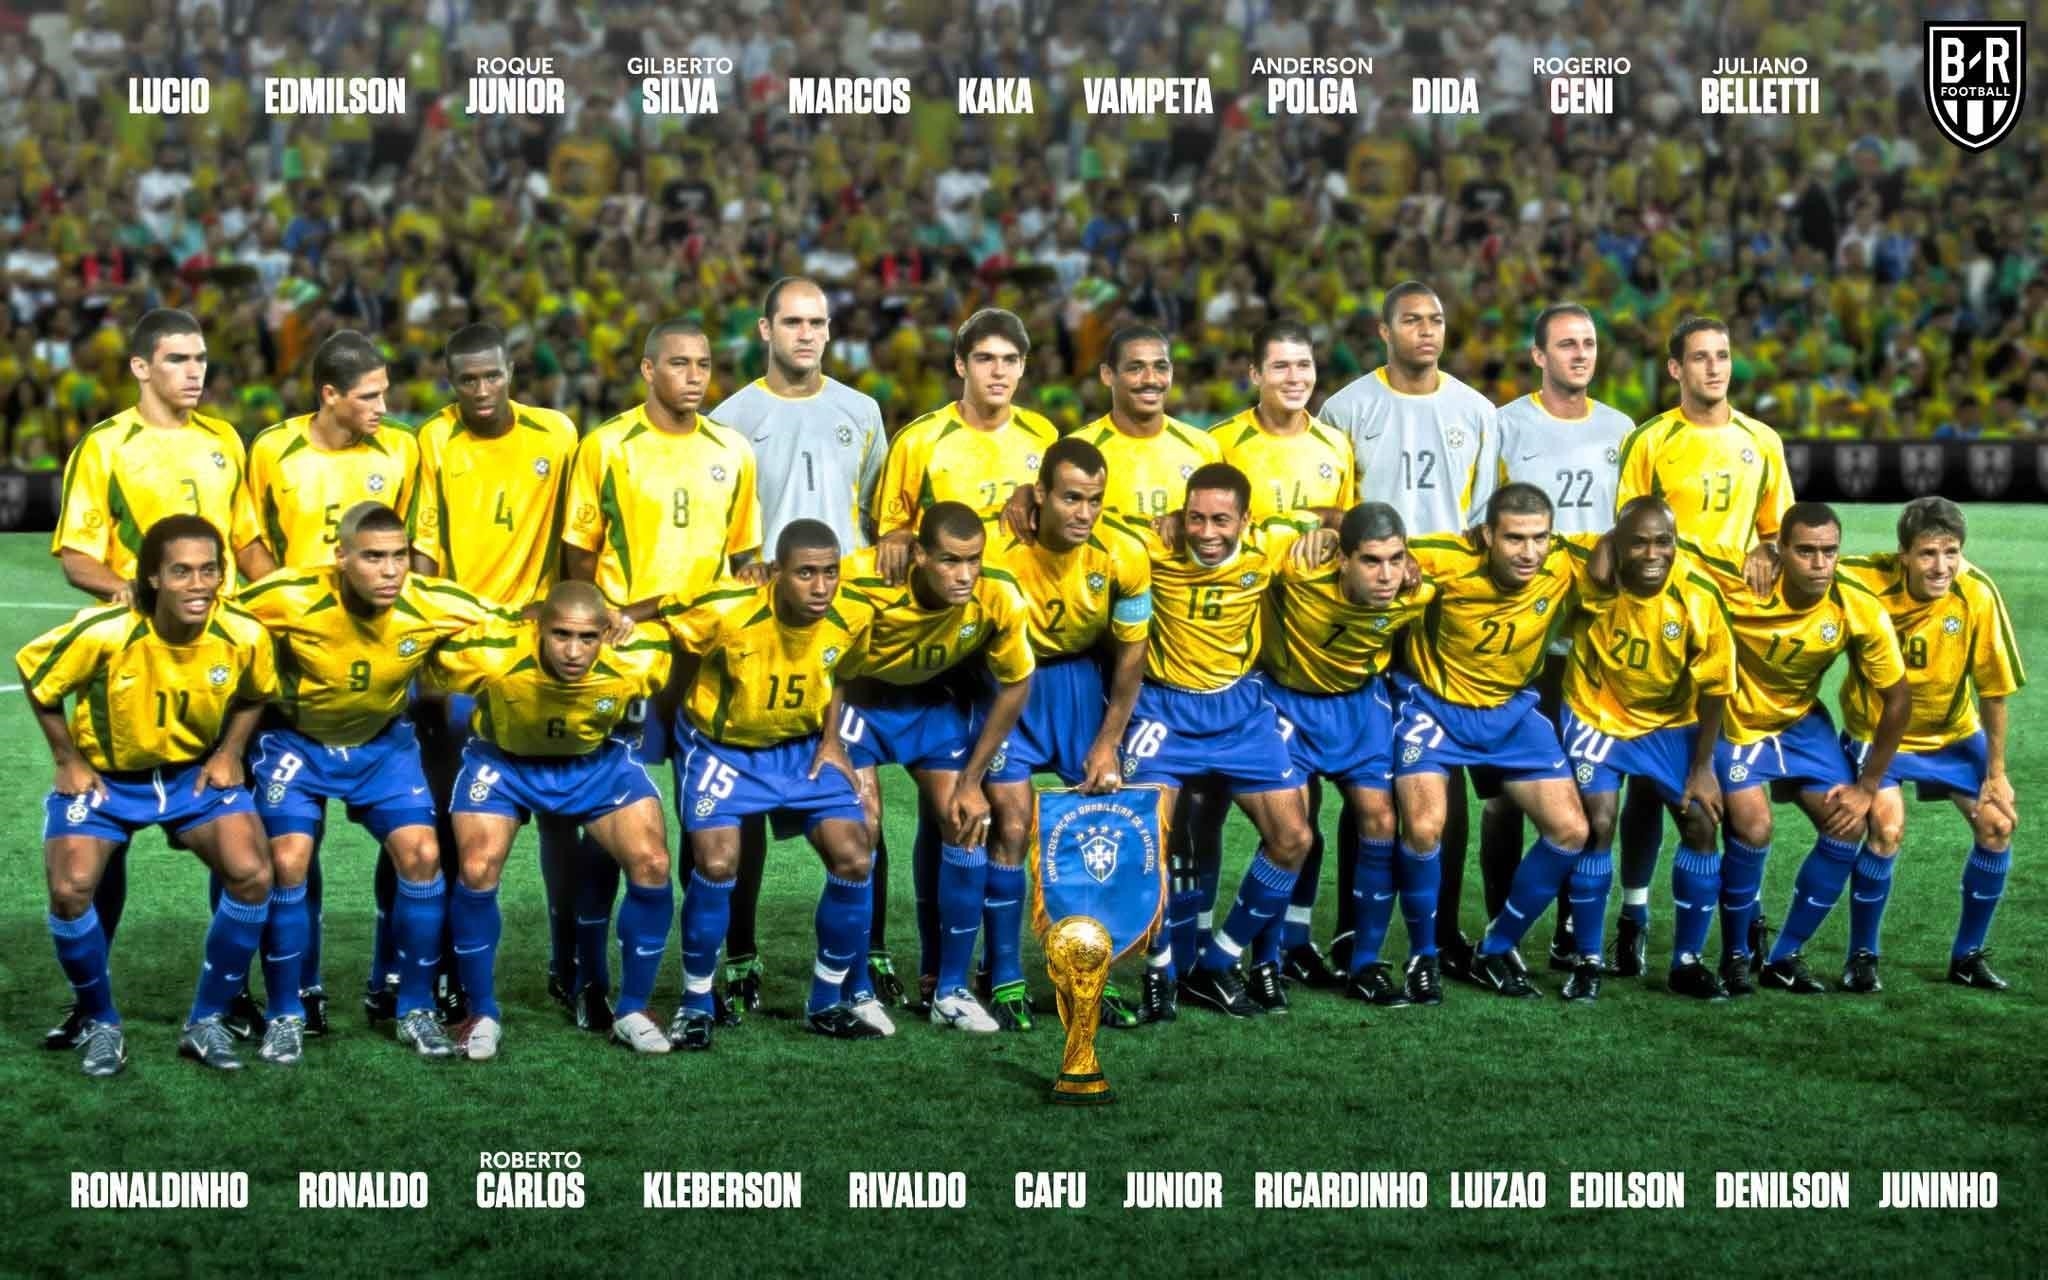 Đội hình Brazil 2002 tham dự World Cup bao gồm những ngôi sao sáng giá như Ronaldo, Rivaldo, Ronaldinho và Cafu. Đây là một trong những đội tuyển Brazil thành công nhất trong lịch sử, giành chức vô địch World Cup lần thứ năm trong lịch sử của mình.